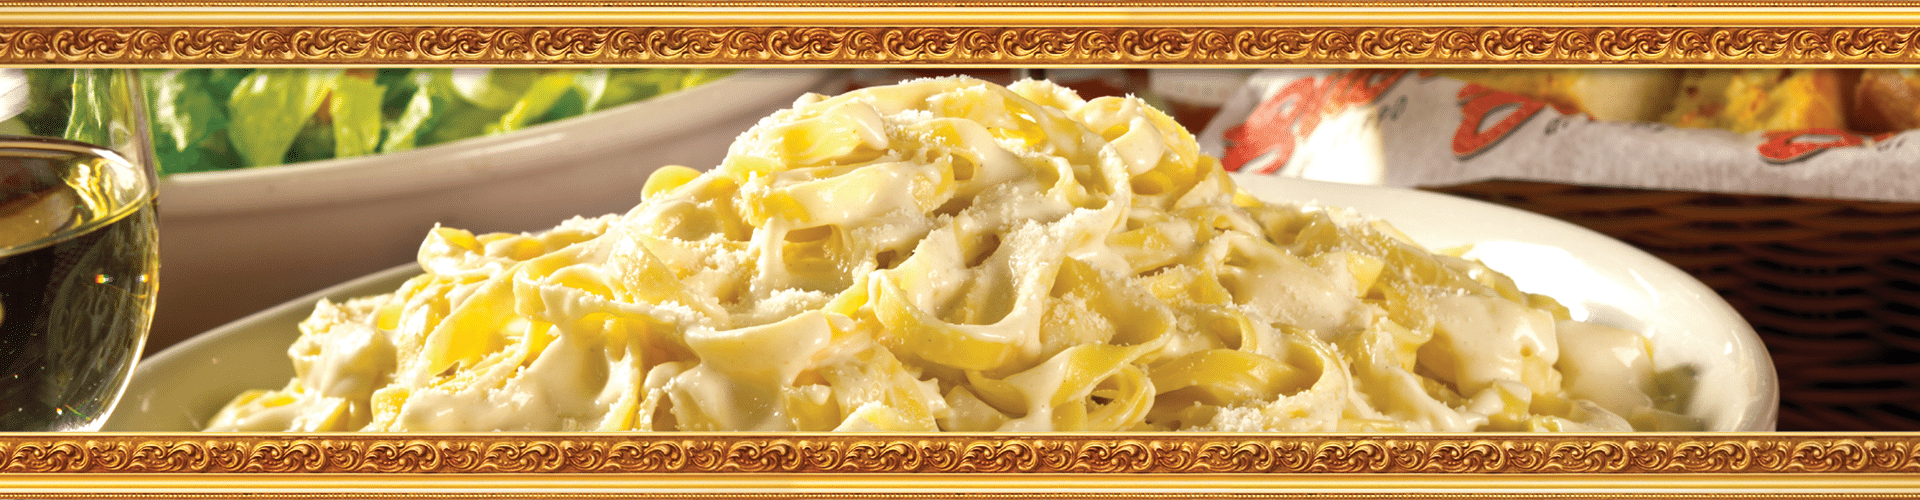 An image of Buca di Beppo pasta